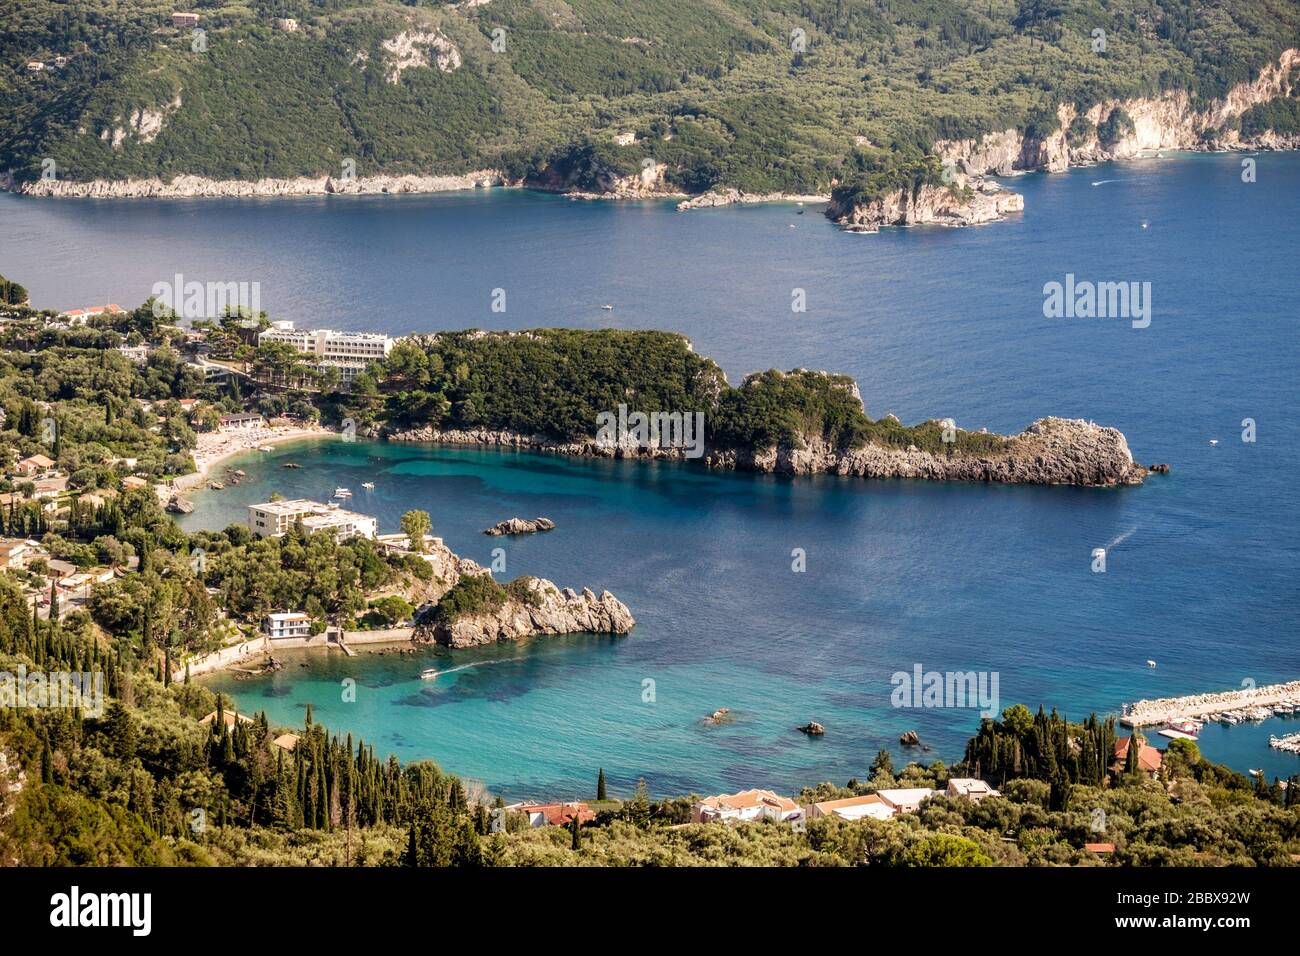 Vista de la zona de la playa Agia Triada desde la carretera de montaña, Corfú Grecia Foto de stock